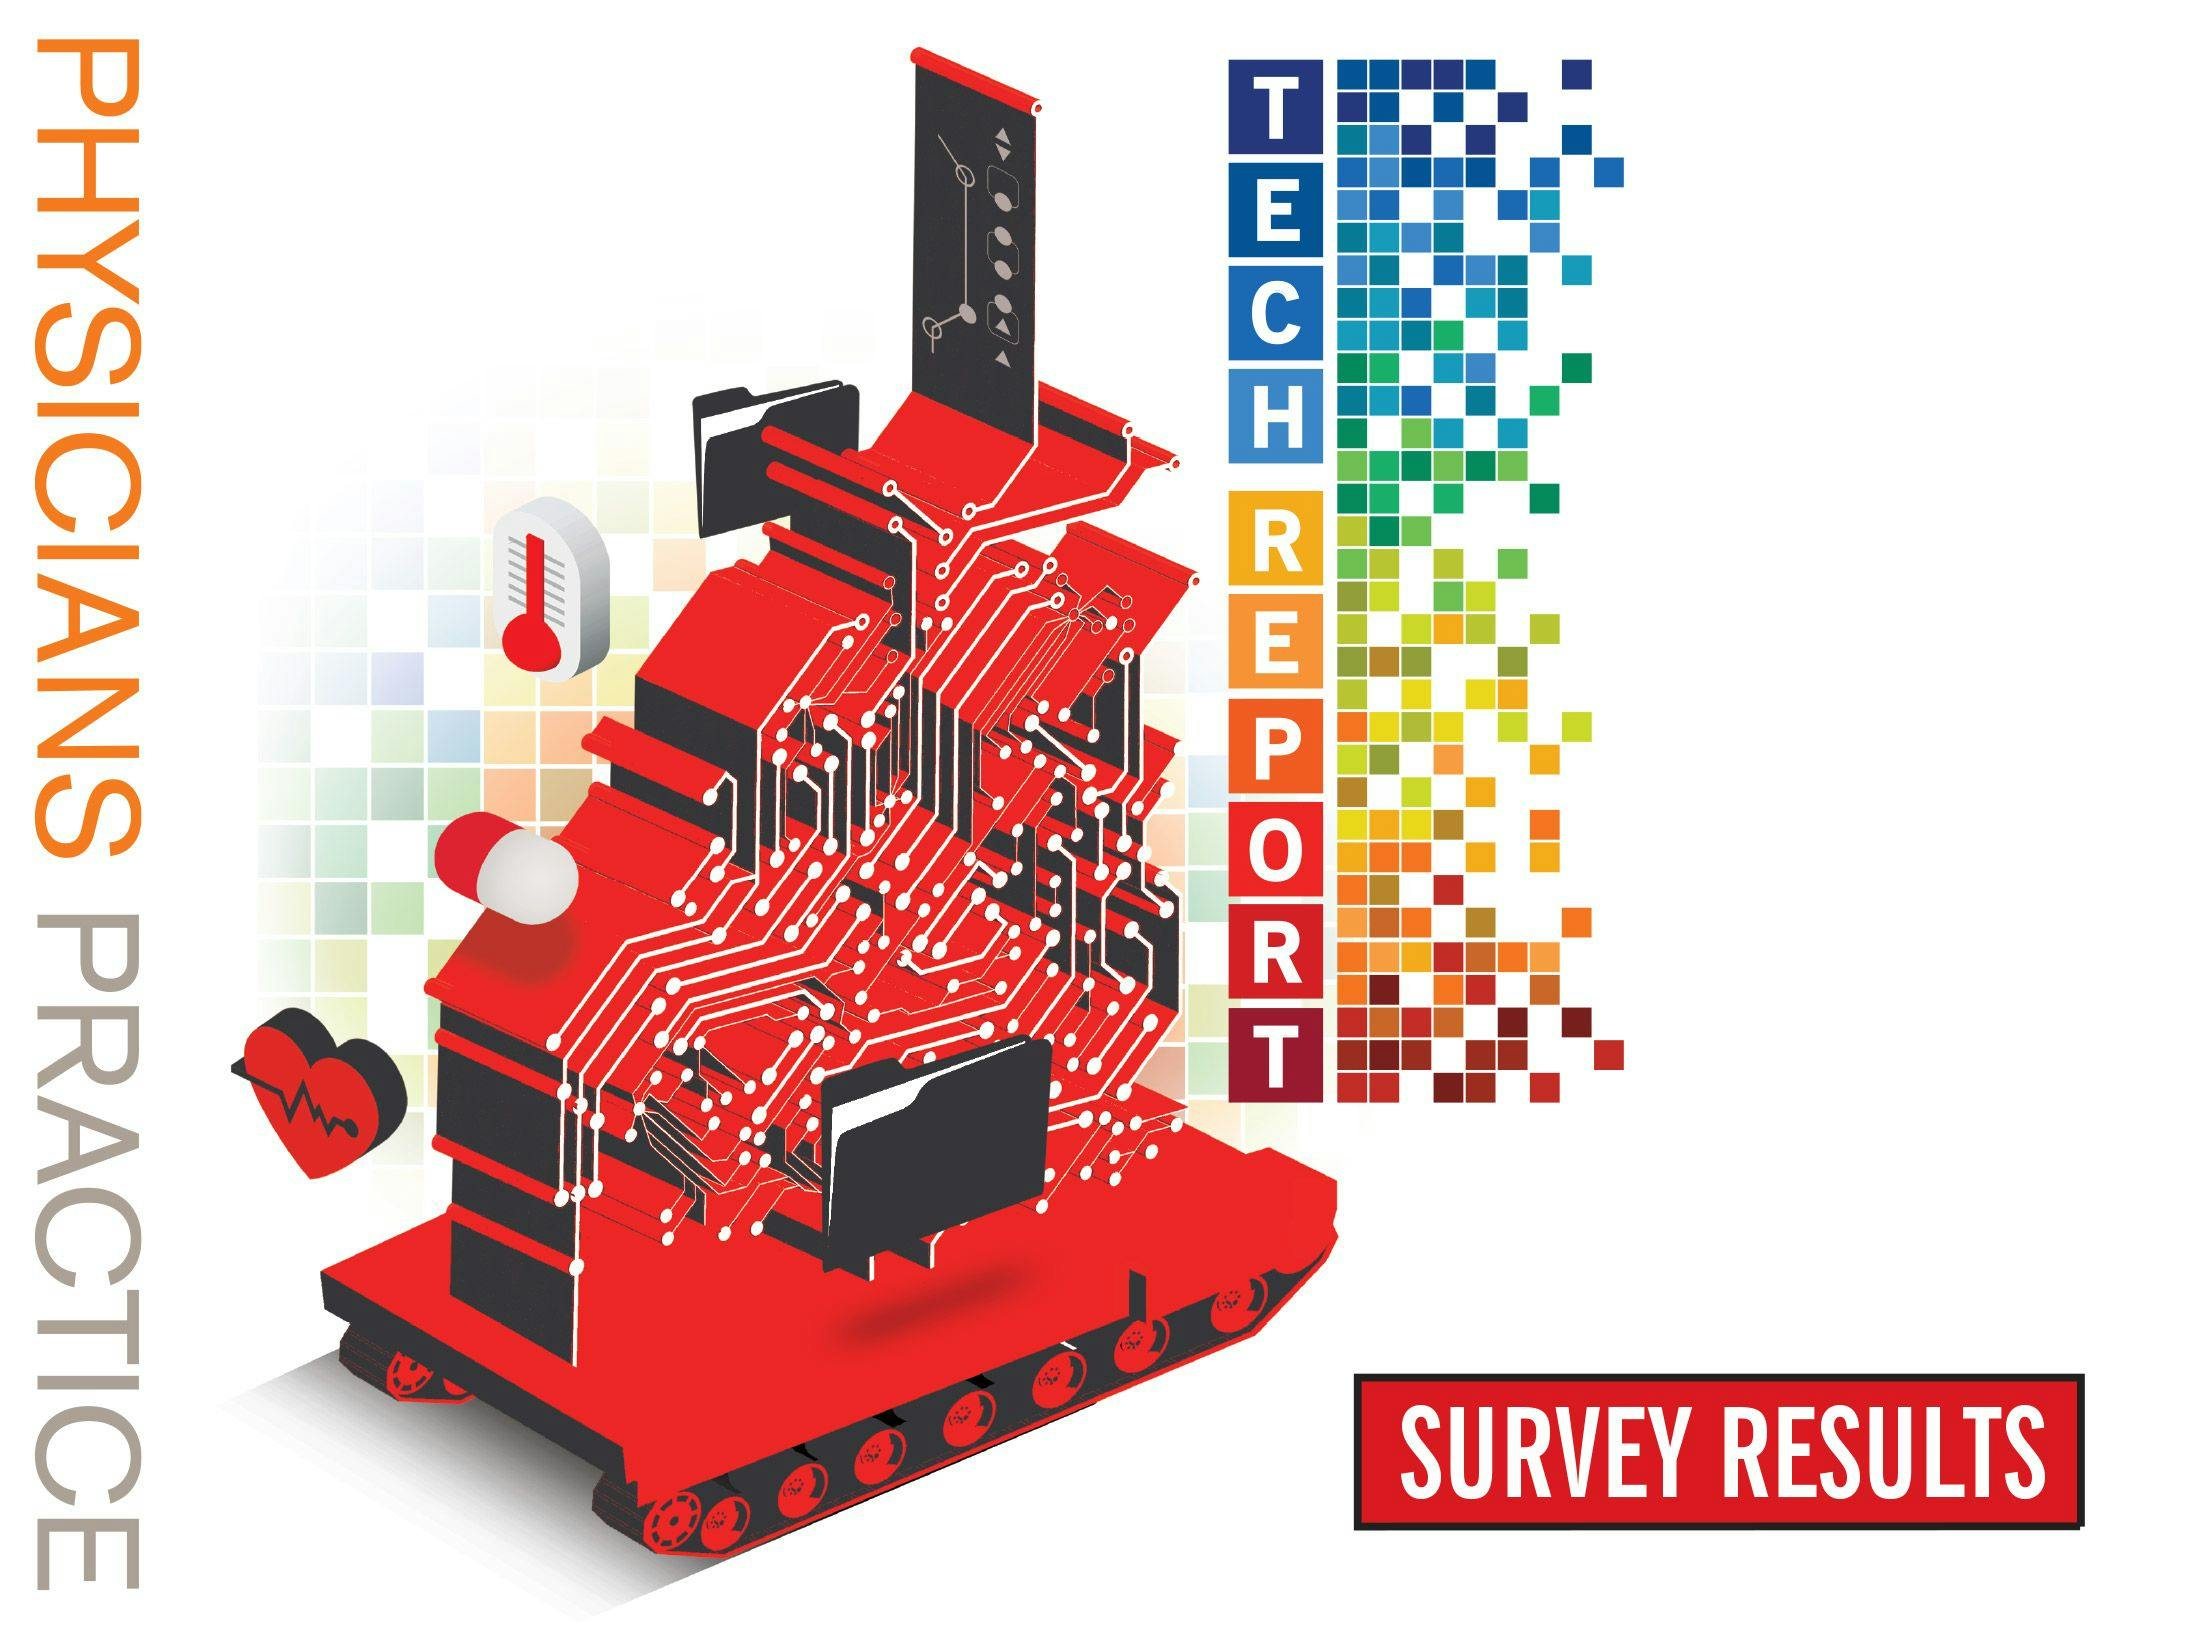 2016 Technology Survey Results